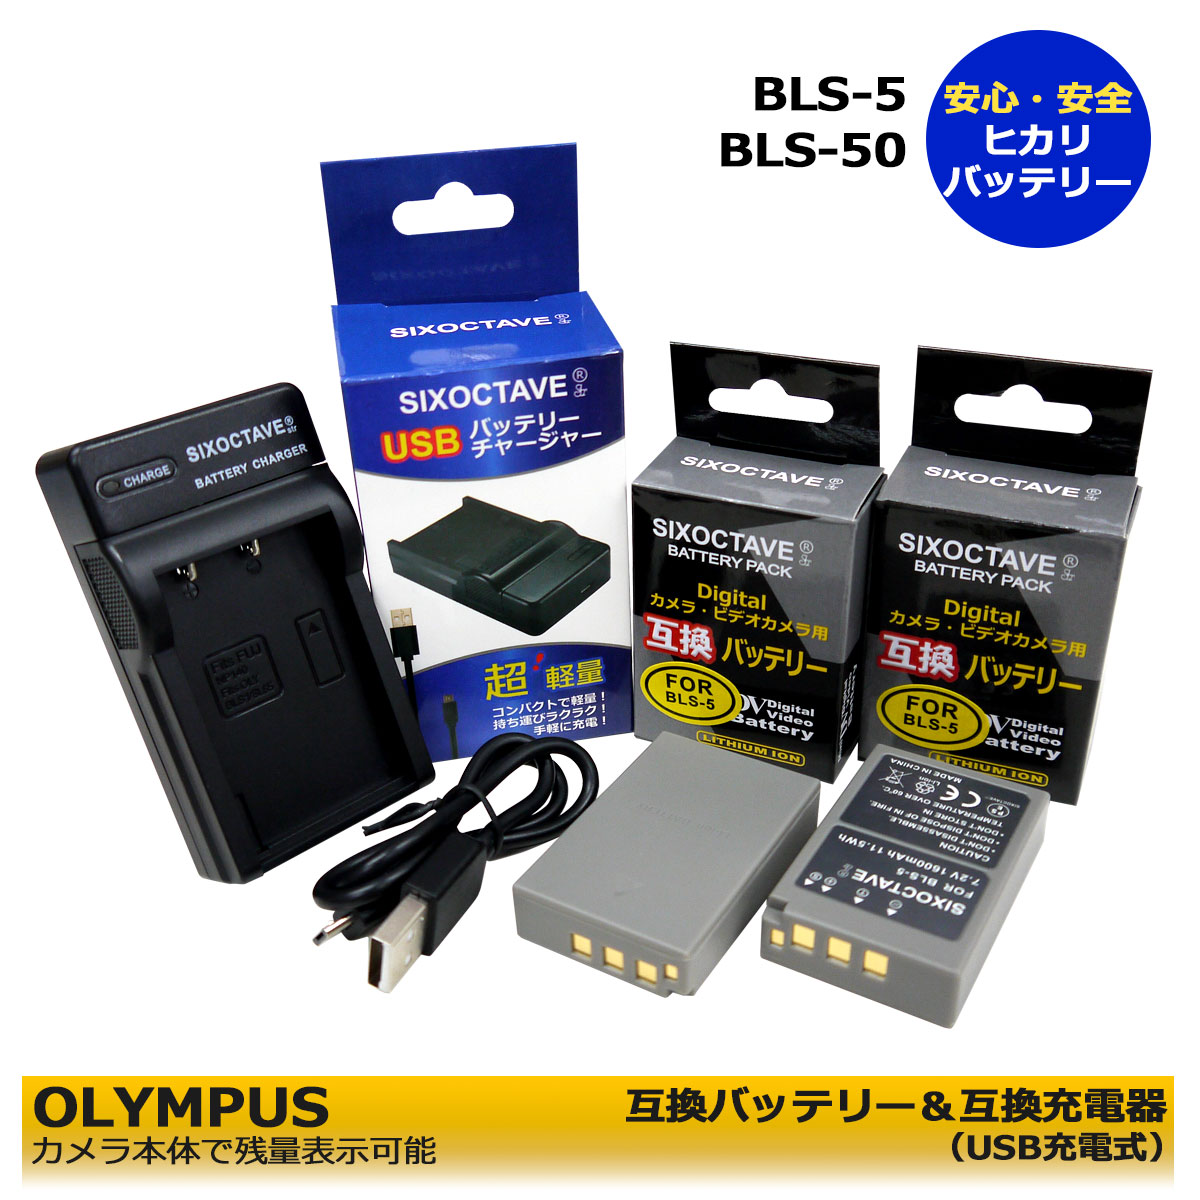 BLS-5 【あす楽対応】 OLYMPUS BLS-5 / BLS-50 / PS-BLS5 / BLS-1 / PS-BLS1 互換交換用 電池 2個と互換USBチャージャーの3点セット E-P1 / E-P2 / E-P3 / E-P3 / E-PL1 / E-PL1s / E-PL2 / E-PL3 / E-PL5 / E-PL6 / E-PL7 / E-PL10 E-M5 Mark III / E−M10 Mark IV